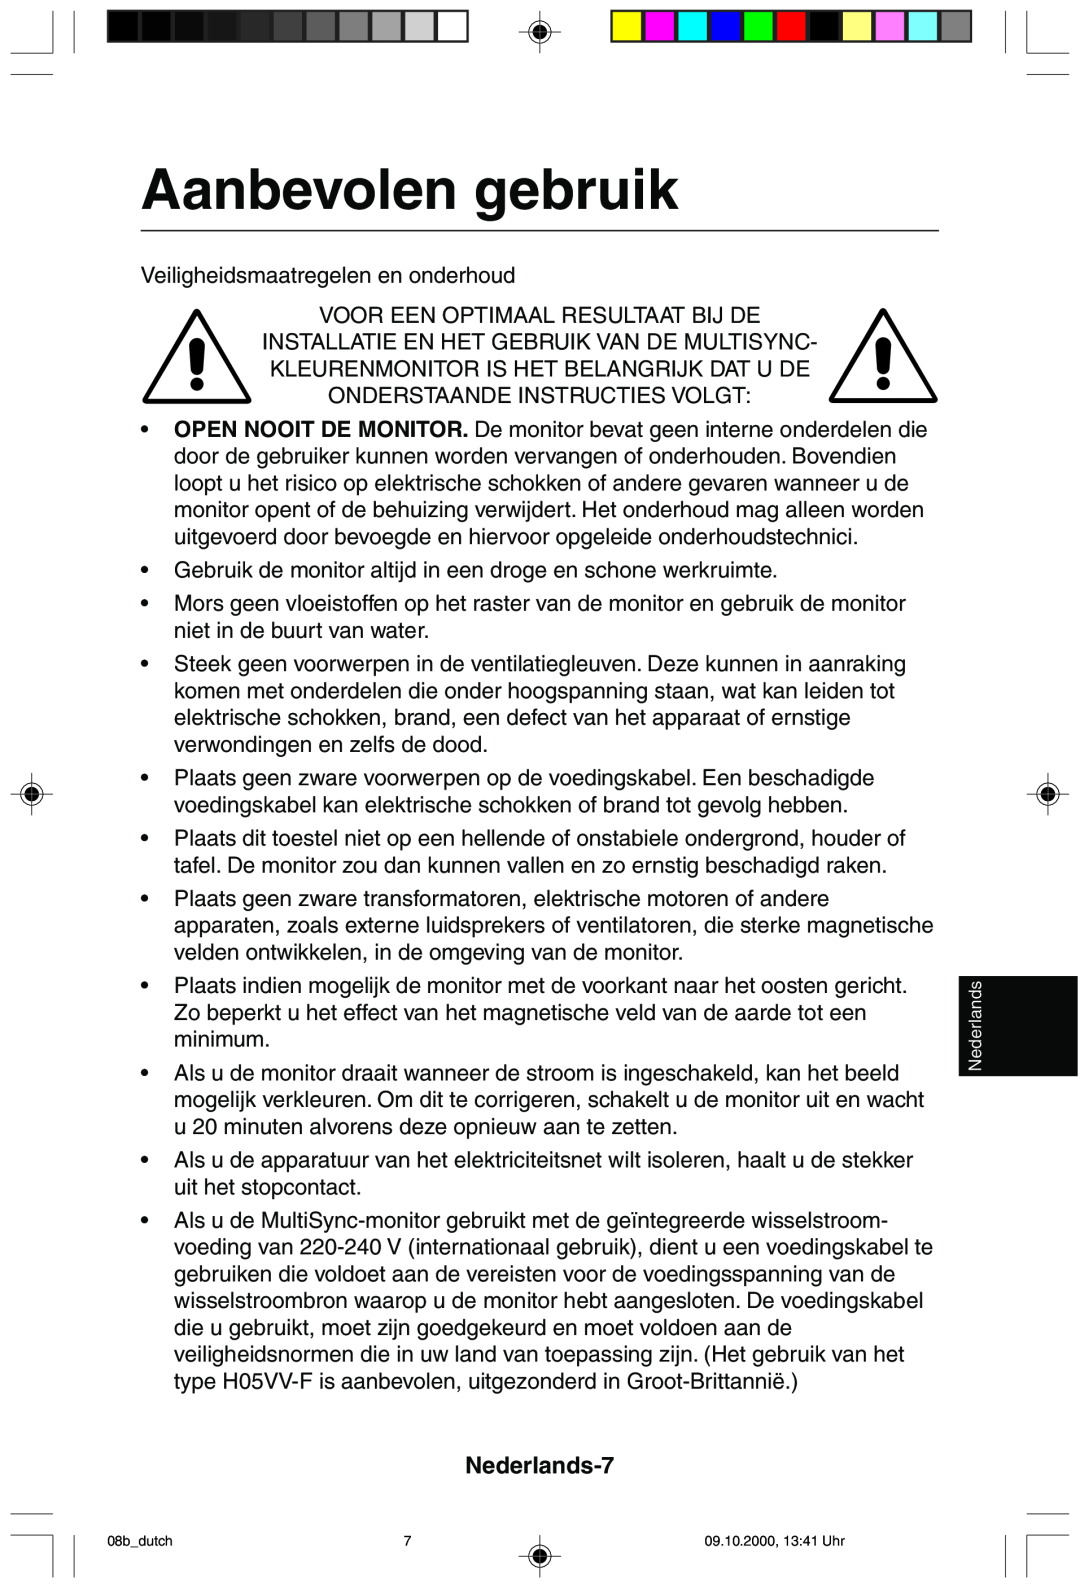 NEC 95F user manual Aanbevolen gebruik, Nederlands-7 